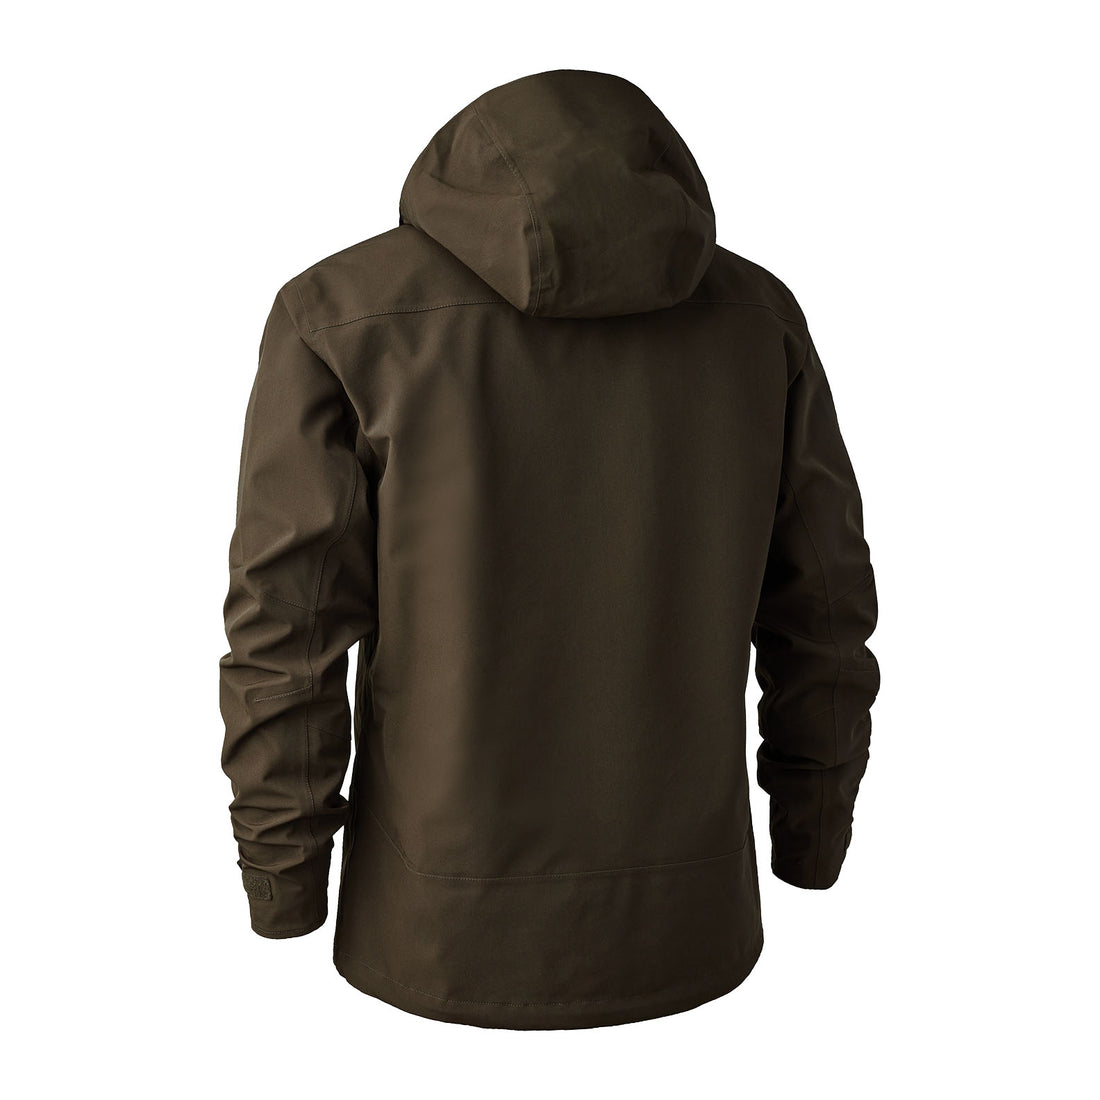 Deerhunter Sarek Shell Jacket With Hood